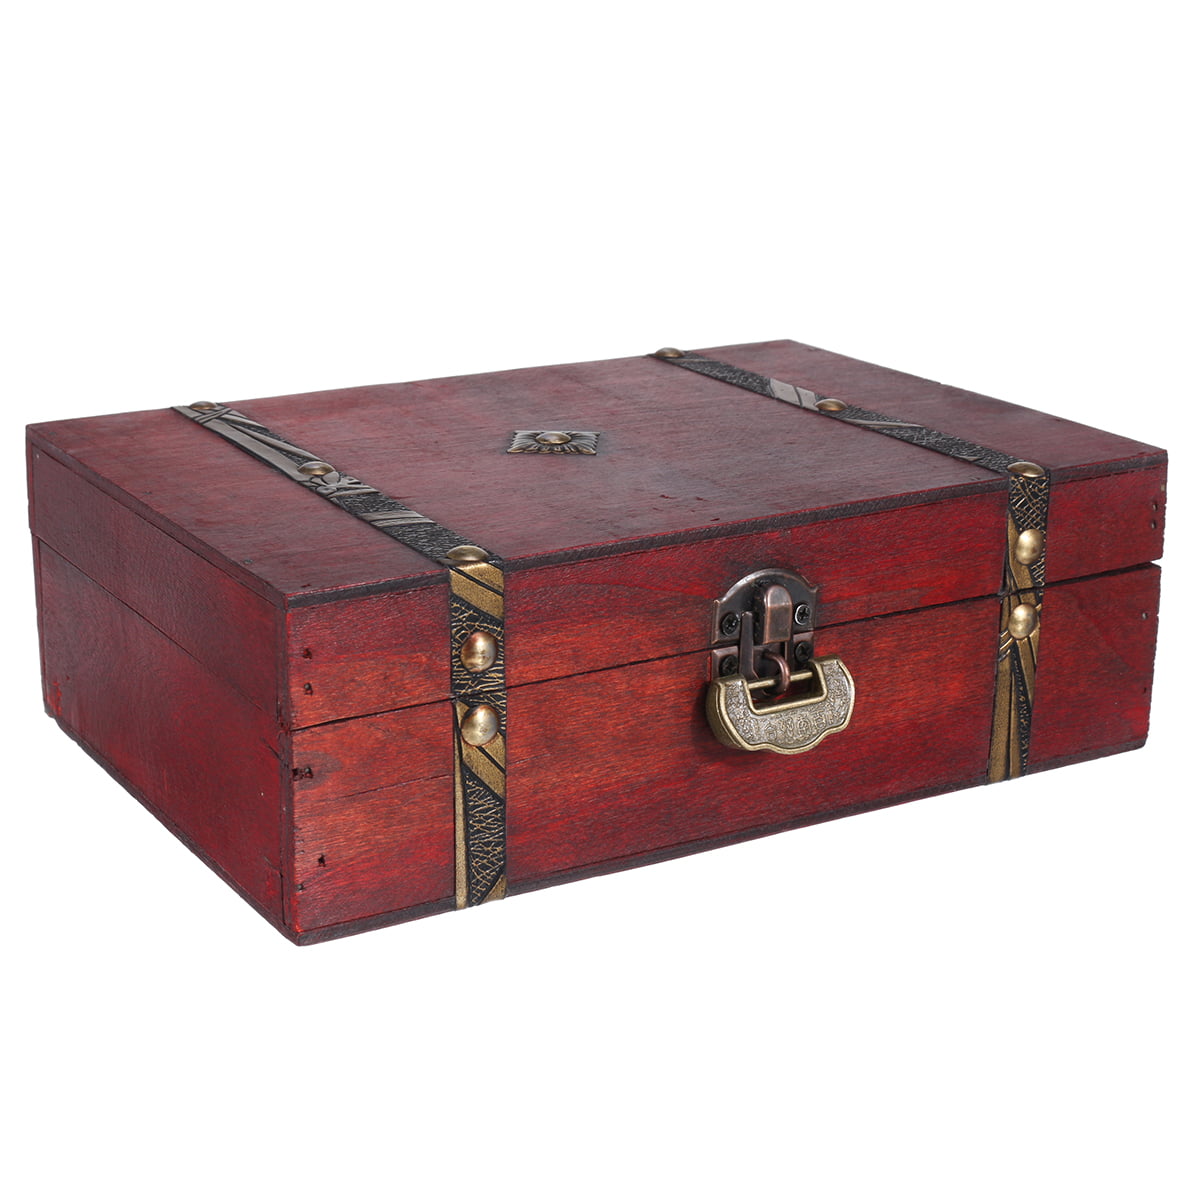 Small box. Mahogany color keys Wooden box for jewelry